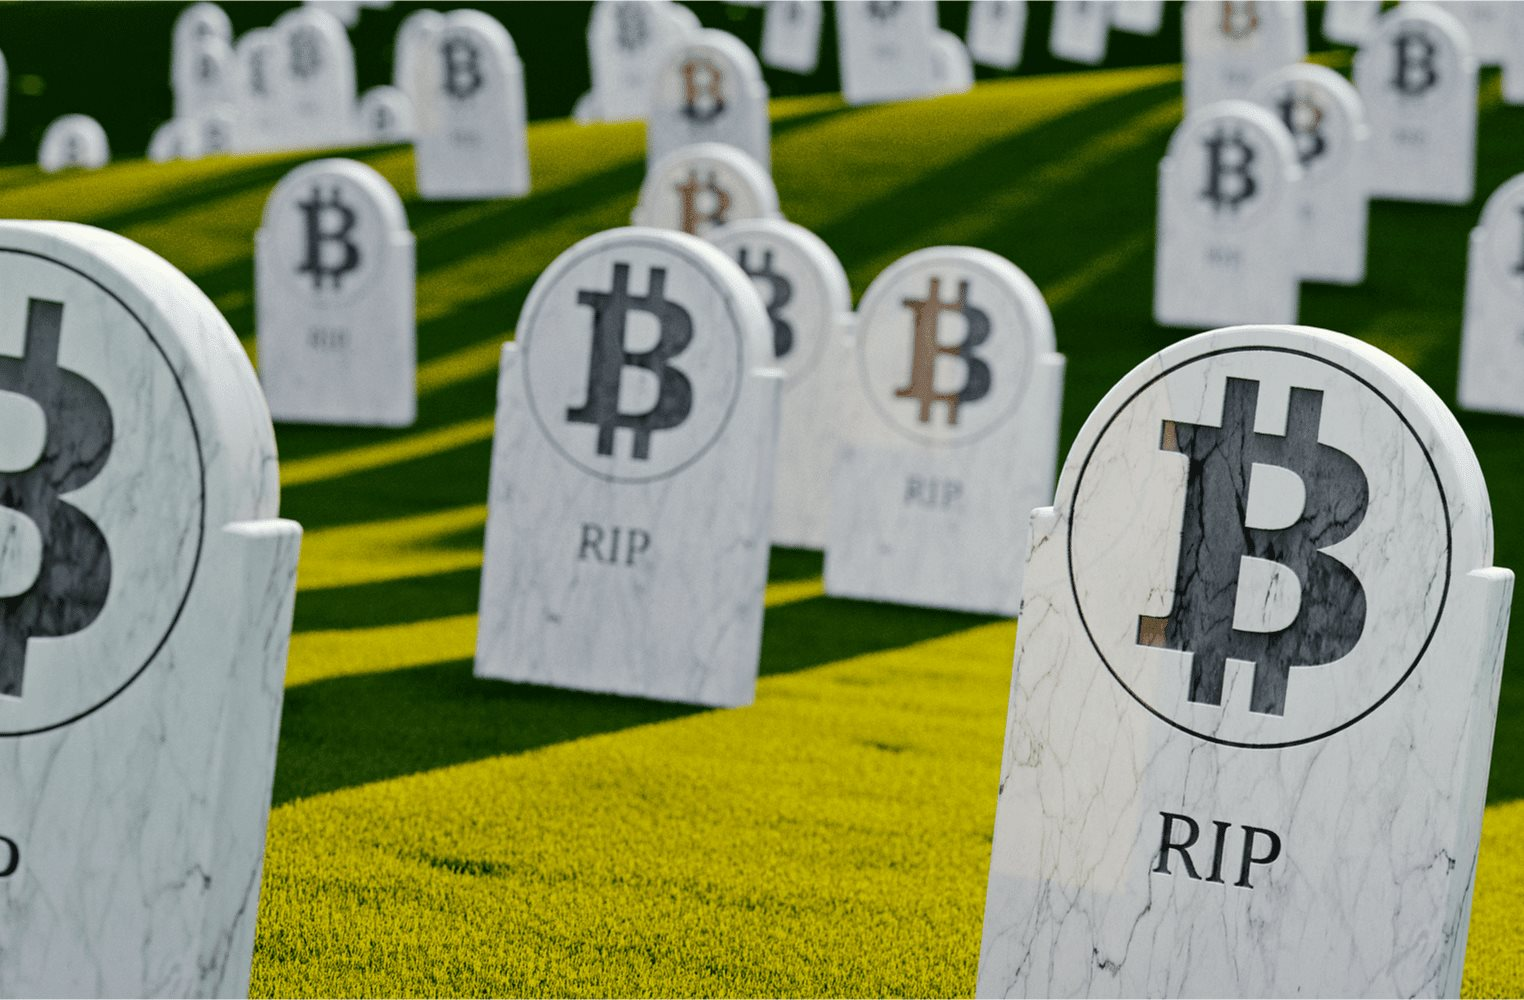 Từng dự báo Bitcoin tăng lên 200.000 USD, tín đồ lâu năm tuyên bố: "Tiền số đã chết ở Mỹ" - Ảnh 1.